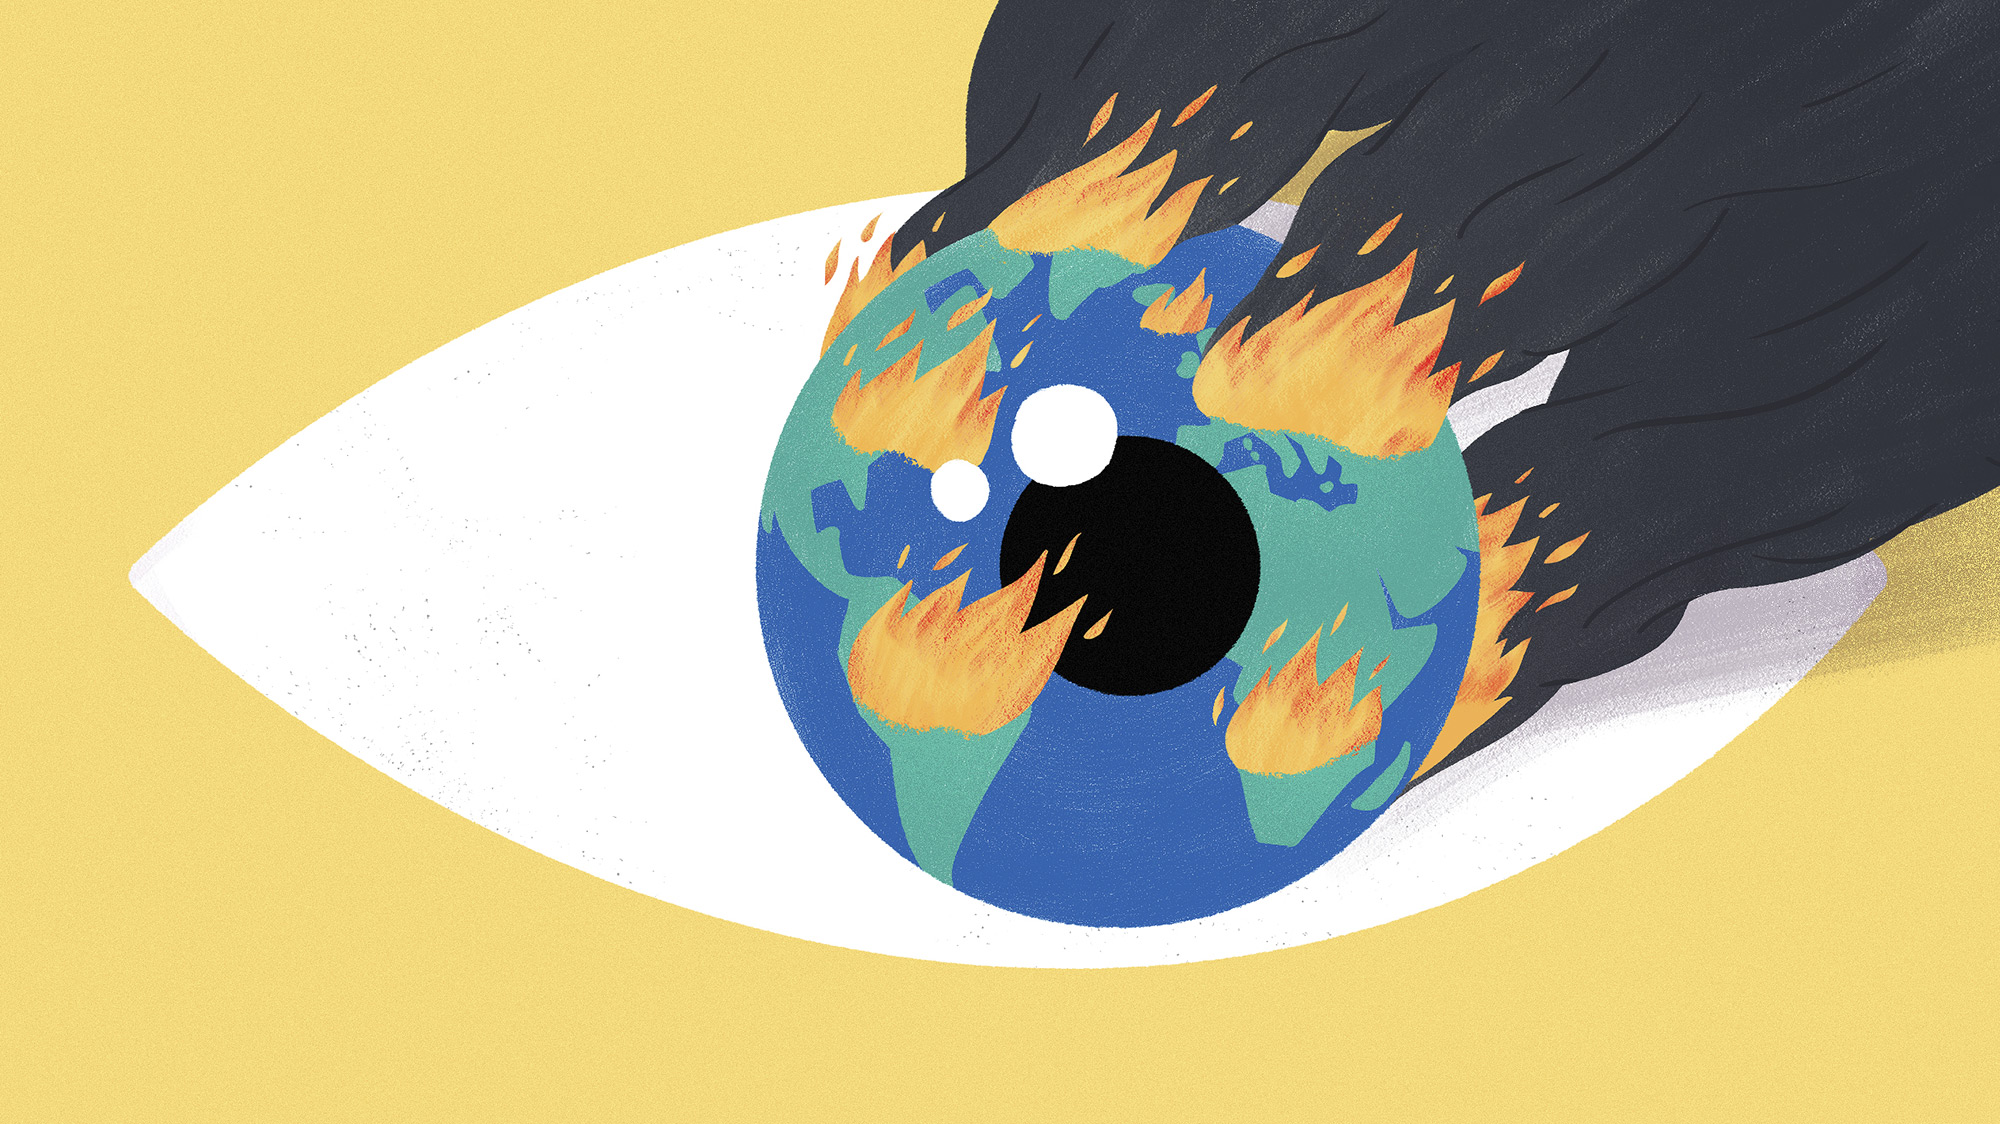 Un oeil en gros plan avec une planète terre en feu en guise de pupille